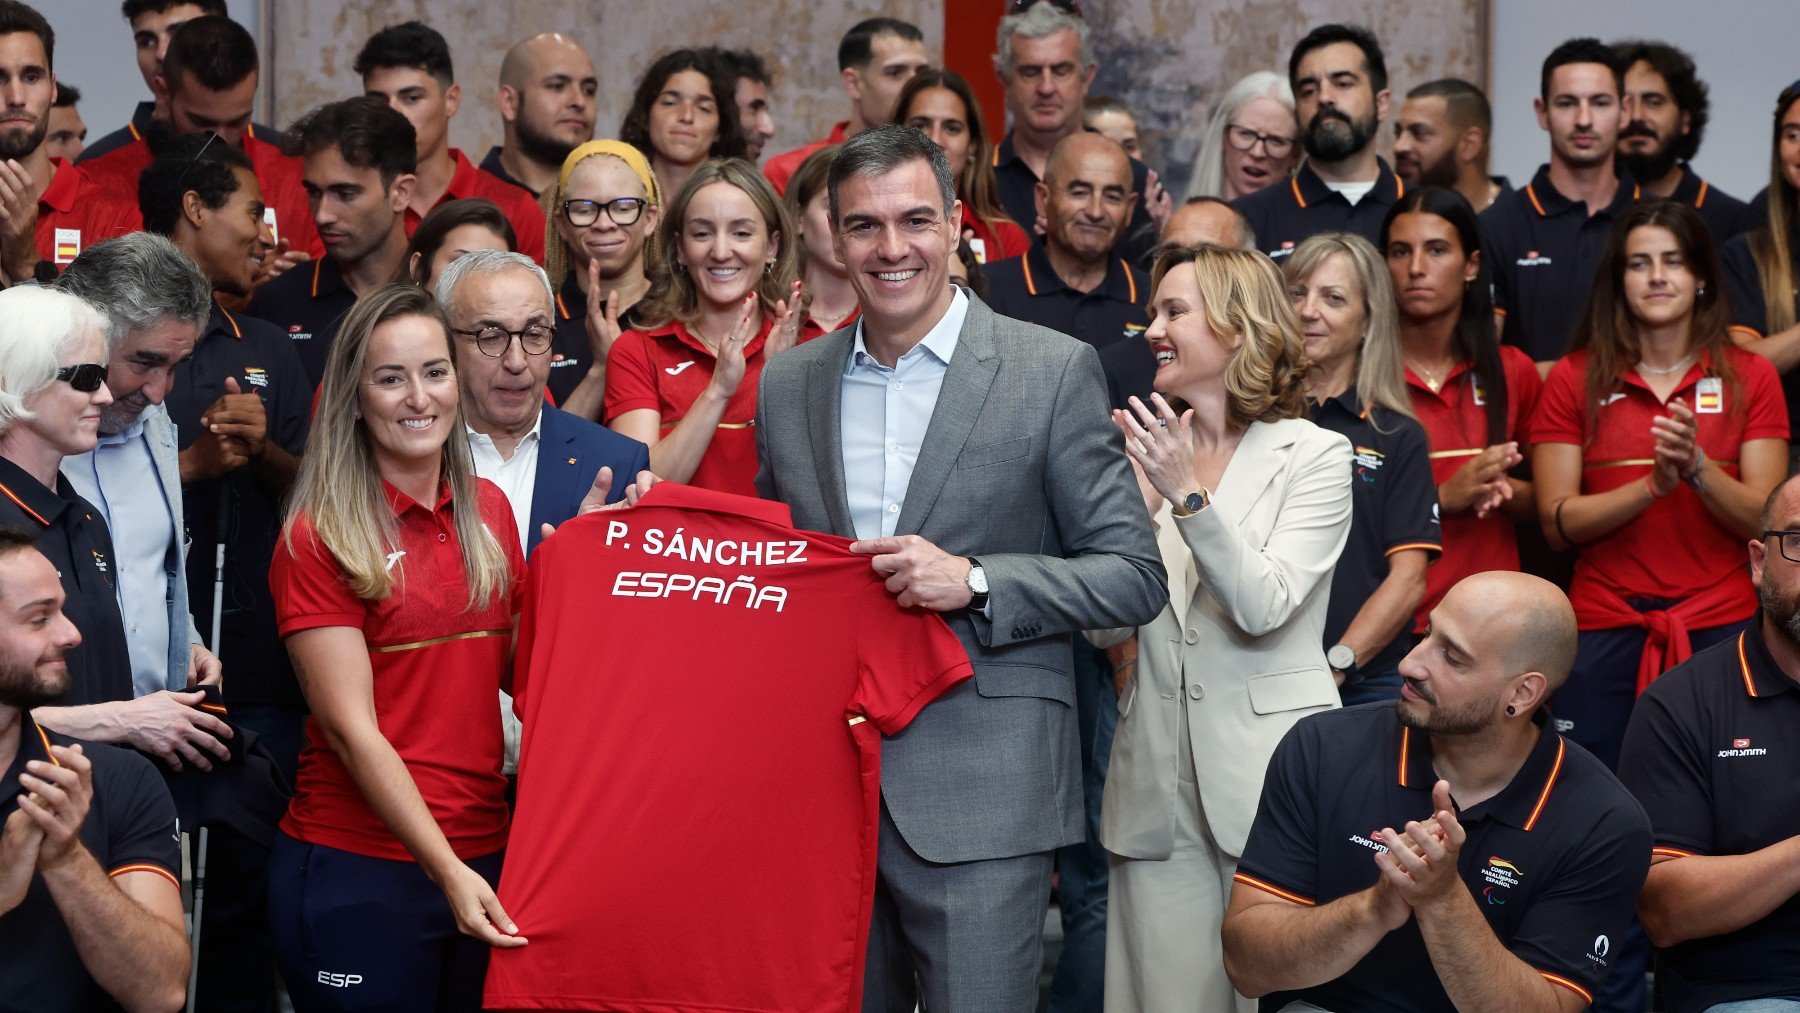 Pedro Sánchez posa con la camiseta que le dieron los deportistas olímpicos antes de irse a París. (EFE)